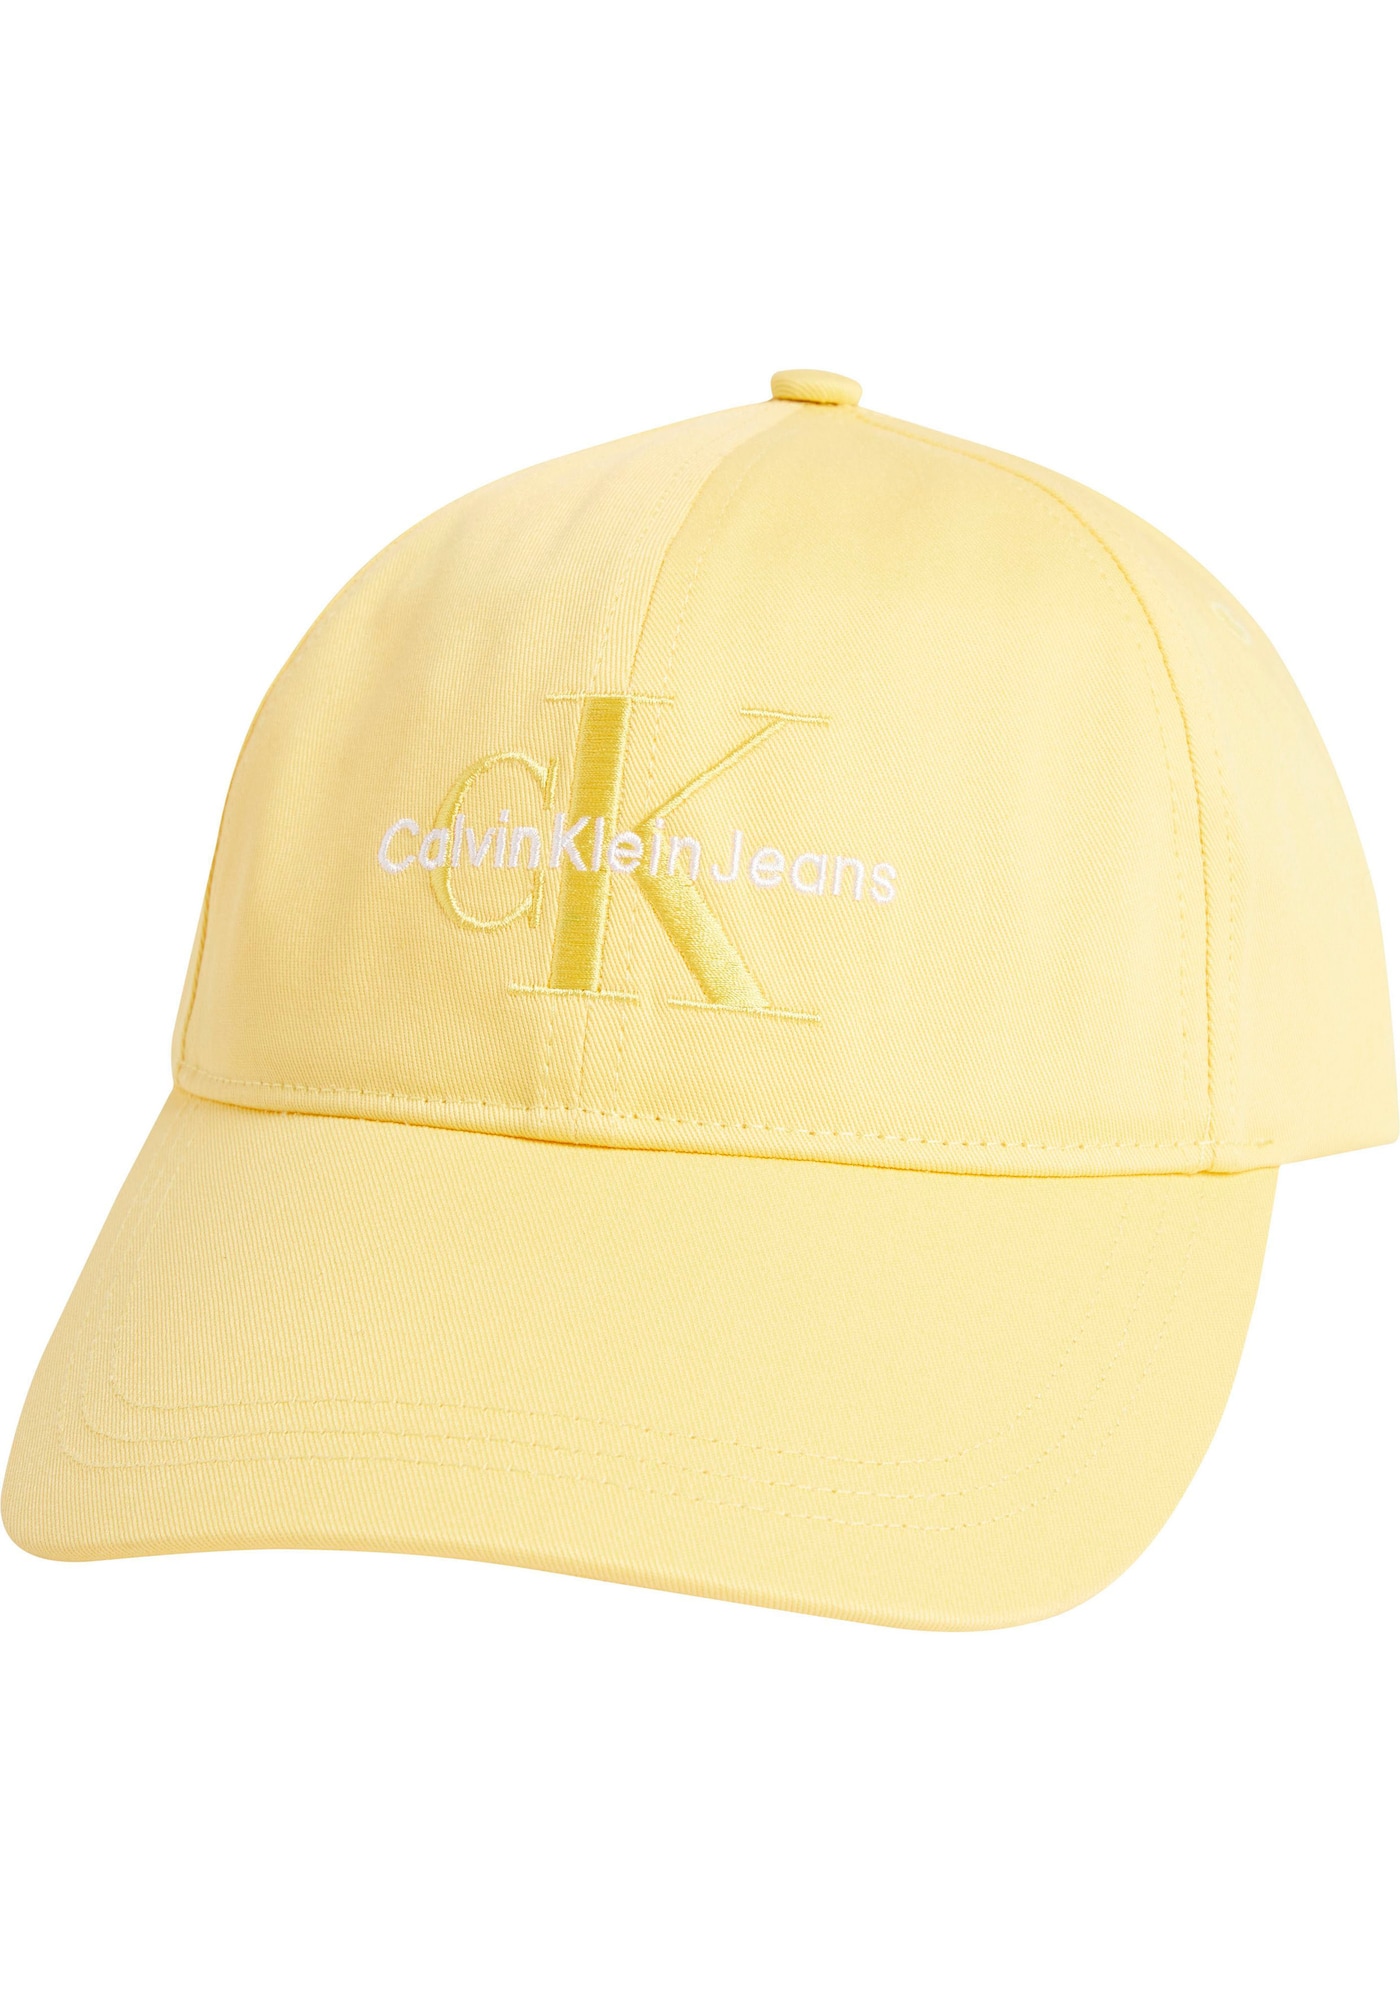 Calvin Klein Jeans Calvin Klein Jeans Cap gelb / weiß